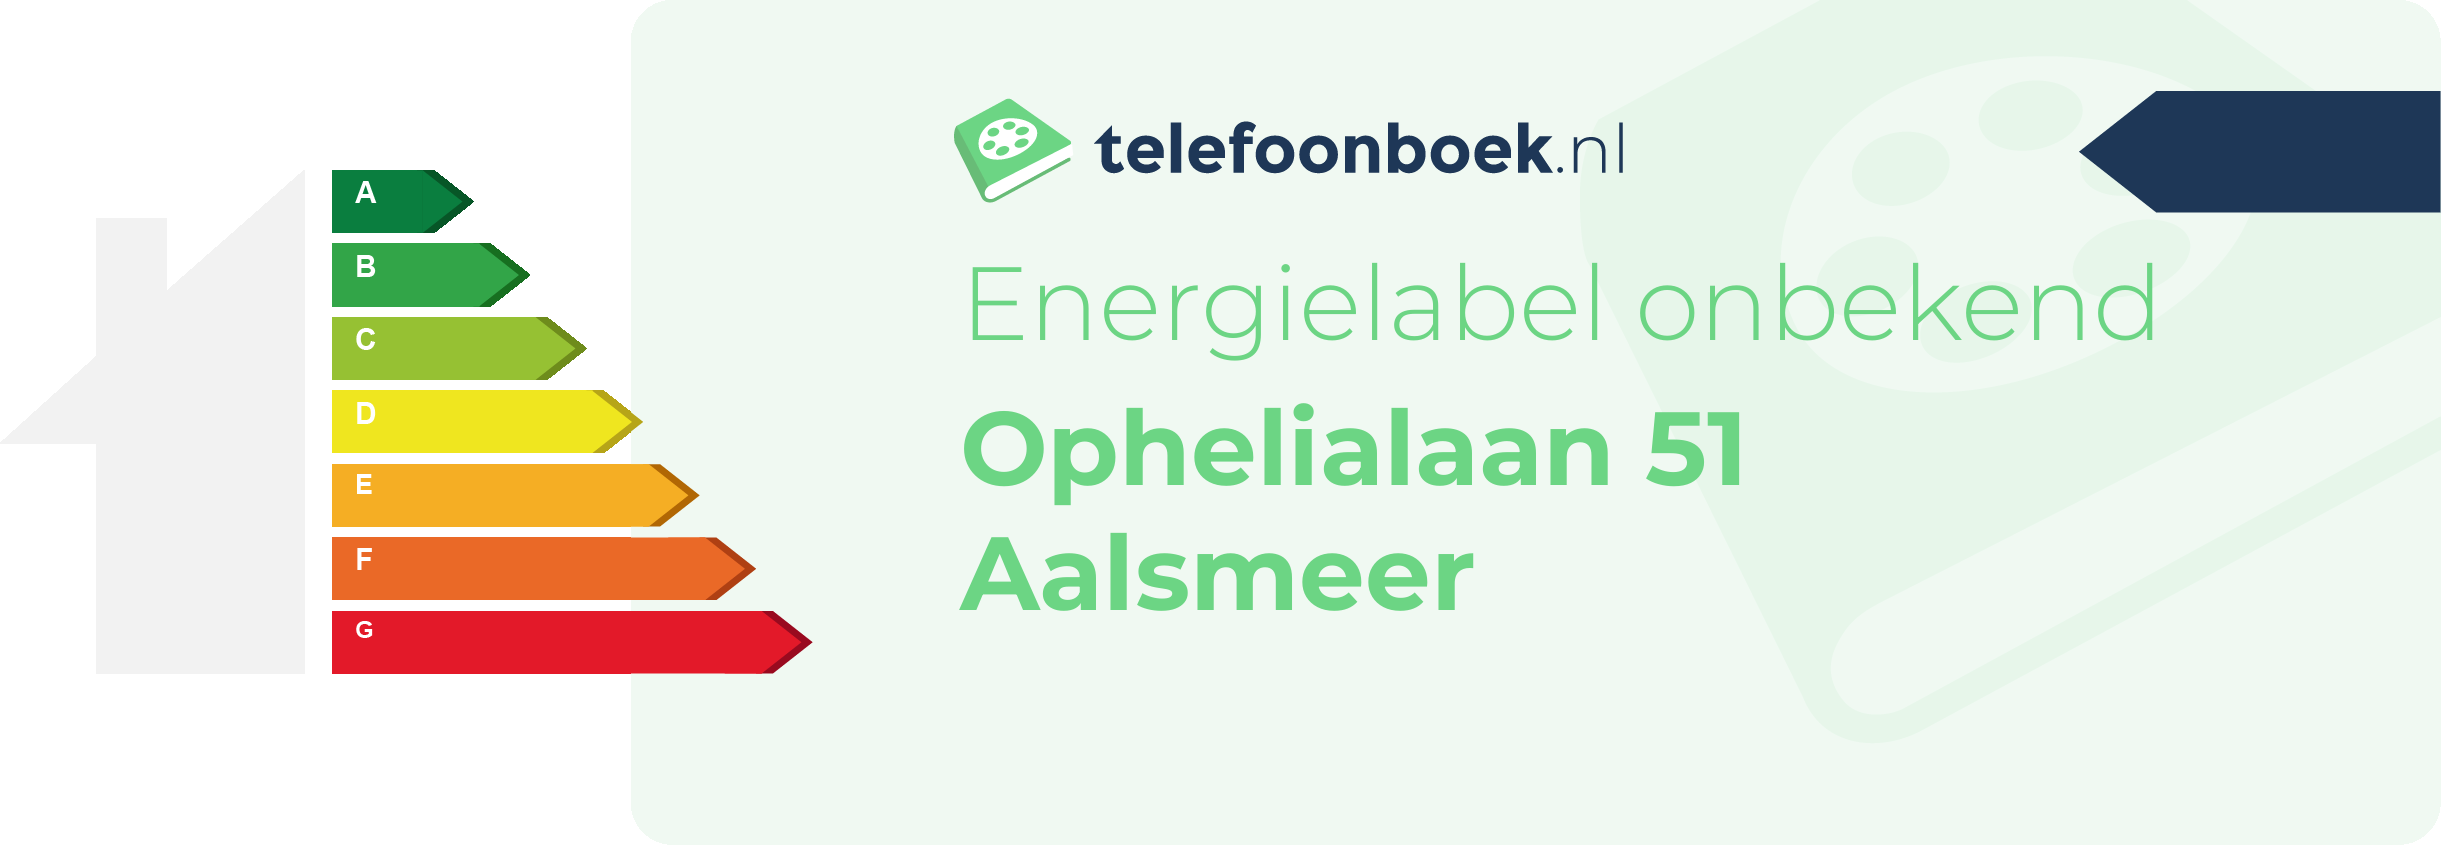 Energielabel Ophelialaan 51 Aalsmeer